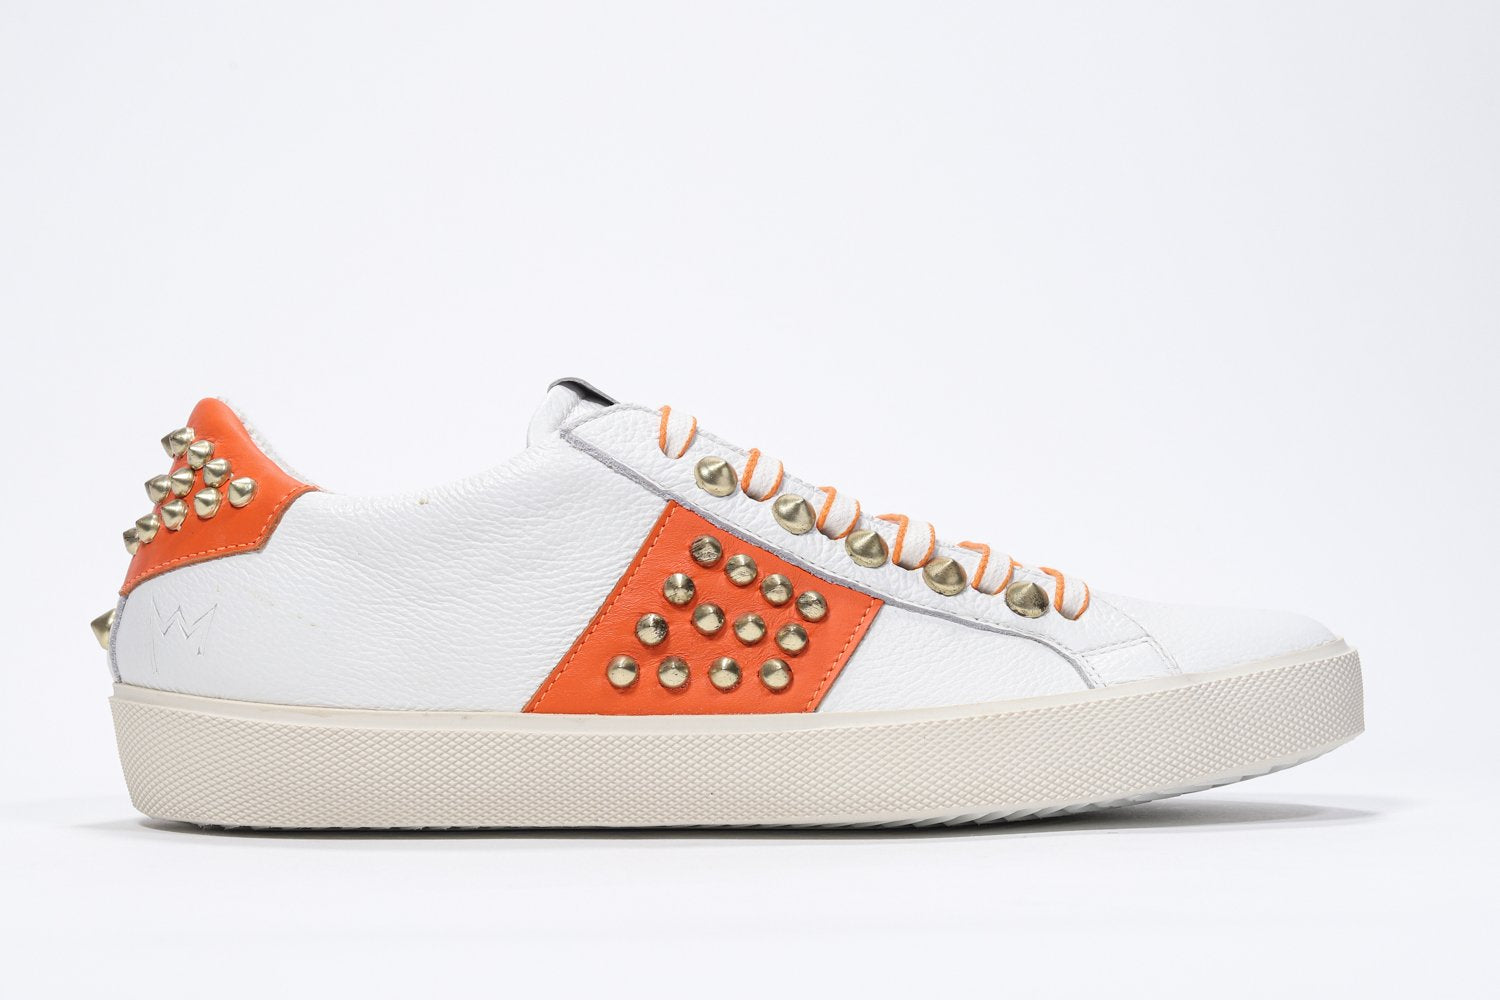 Seitliches Profil von weißem und orangefarbenem Low-Top sneaker. Obermaterial aus Vollleder mit Nieten und Vintage-Gummisohle.